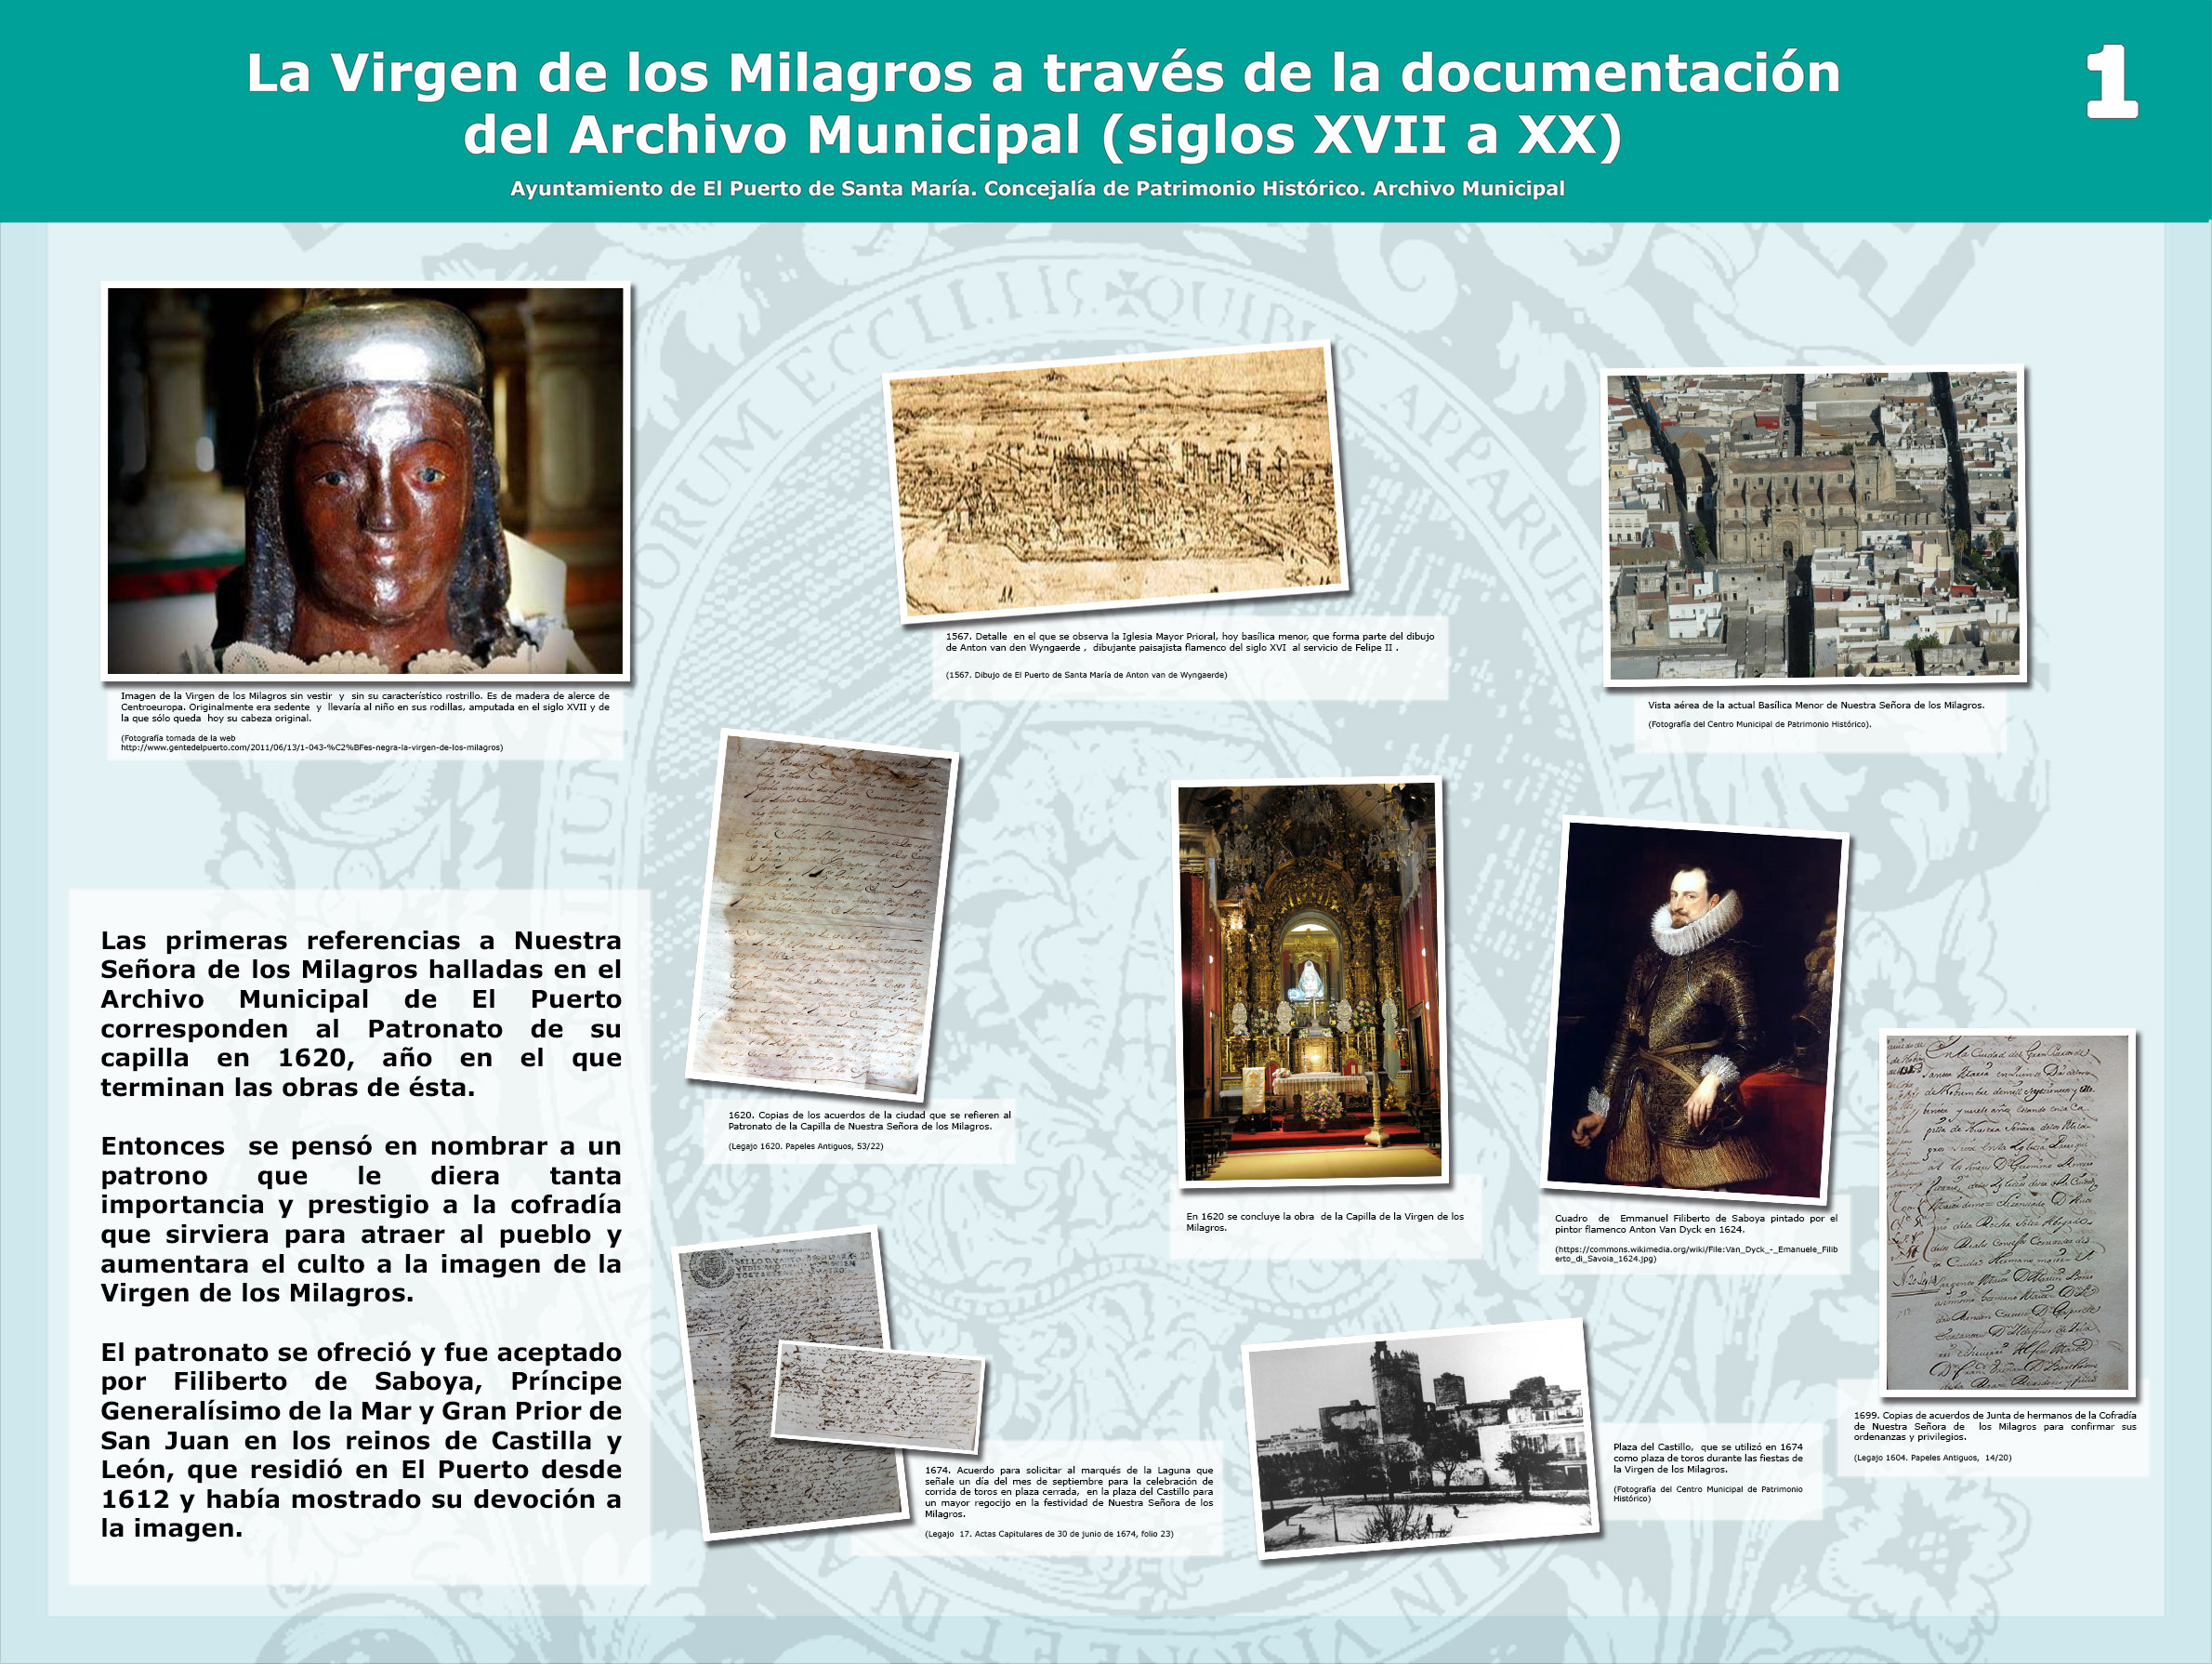 La Virgen de los Milagros a través de la documentación del Archivo Municipal (s. XVII a XX)